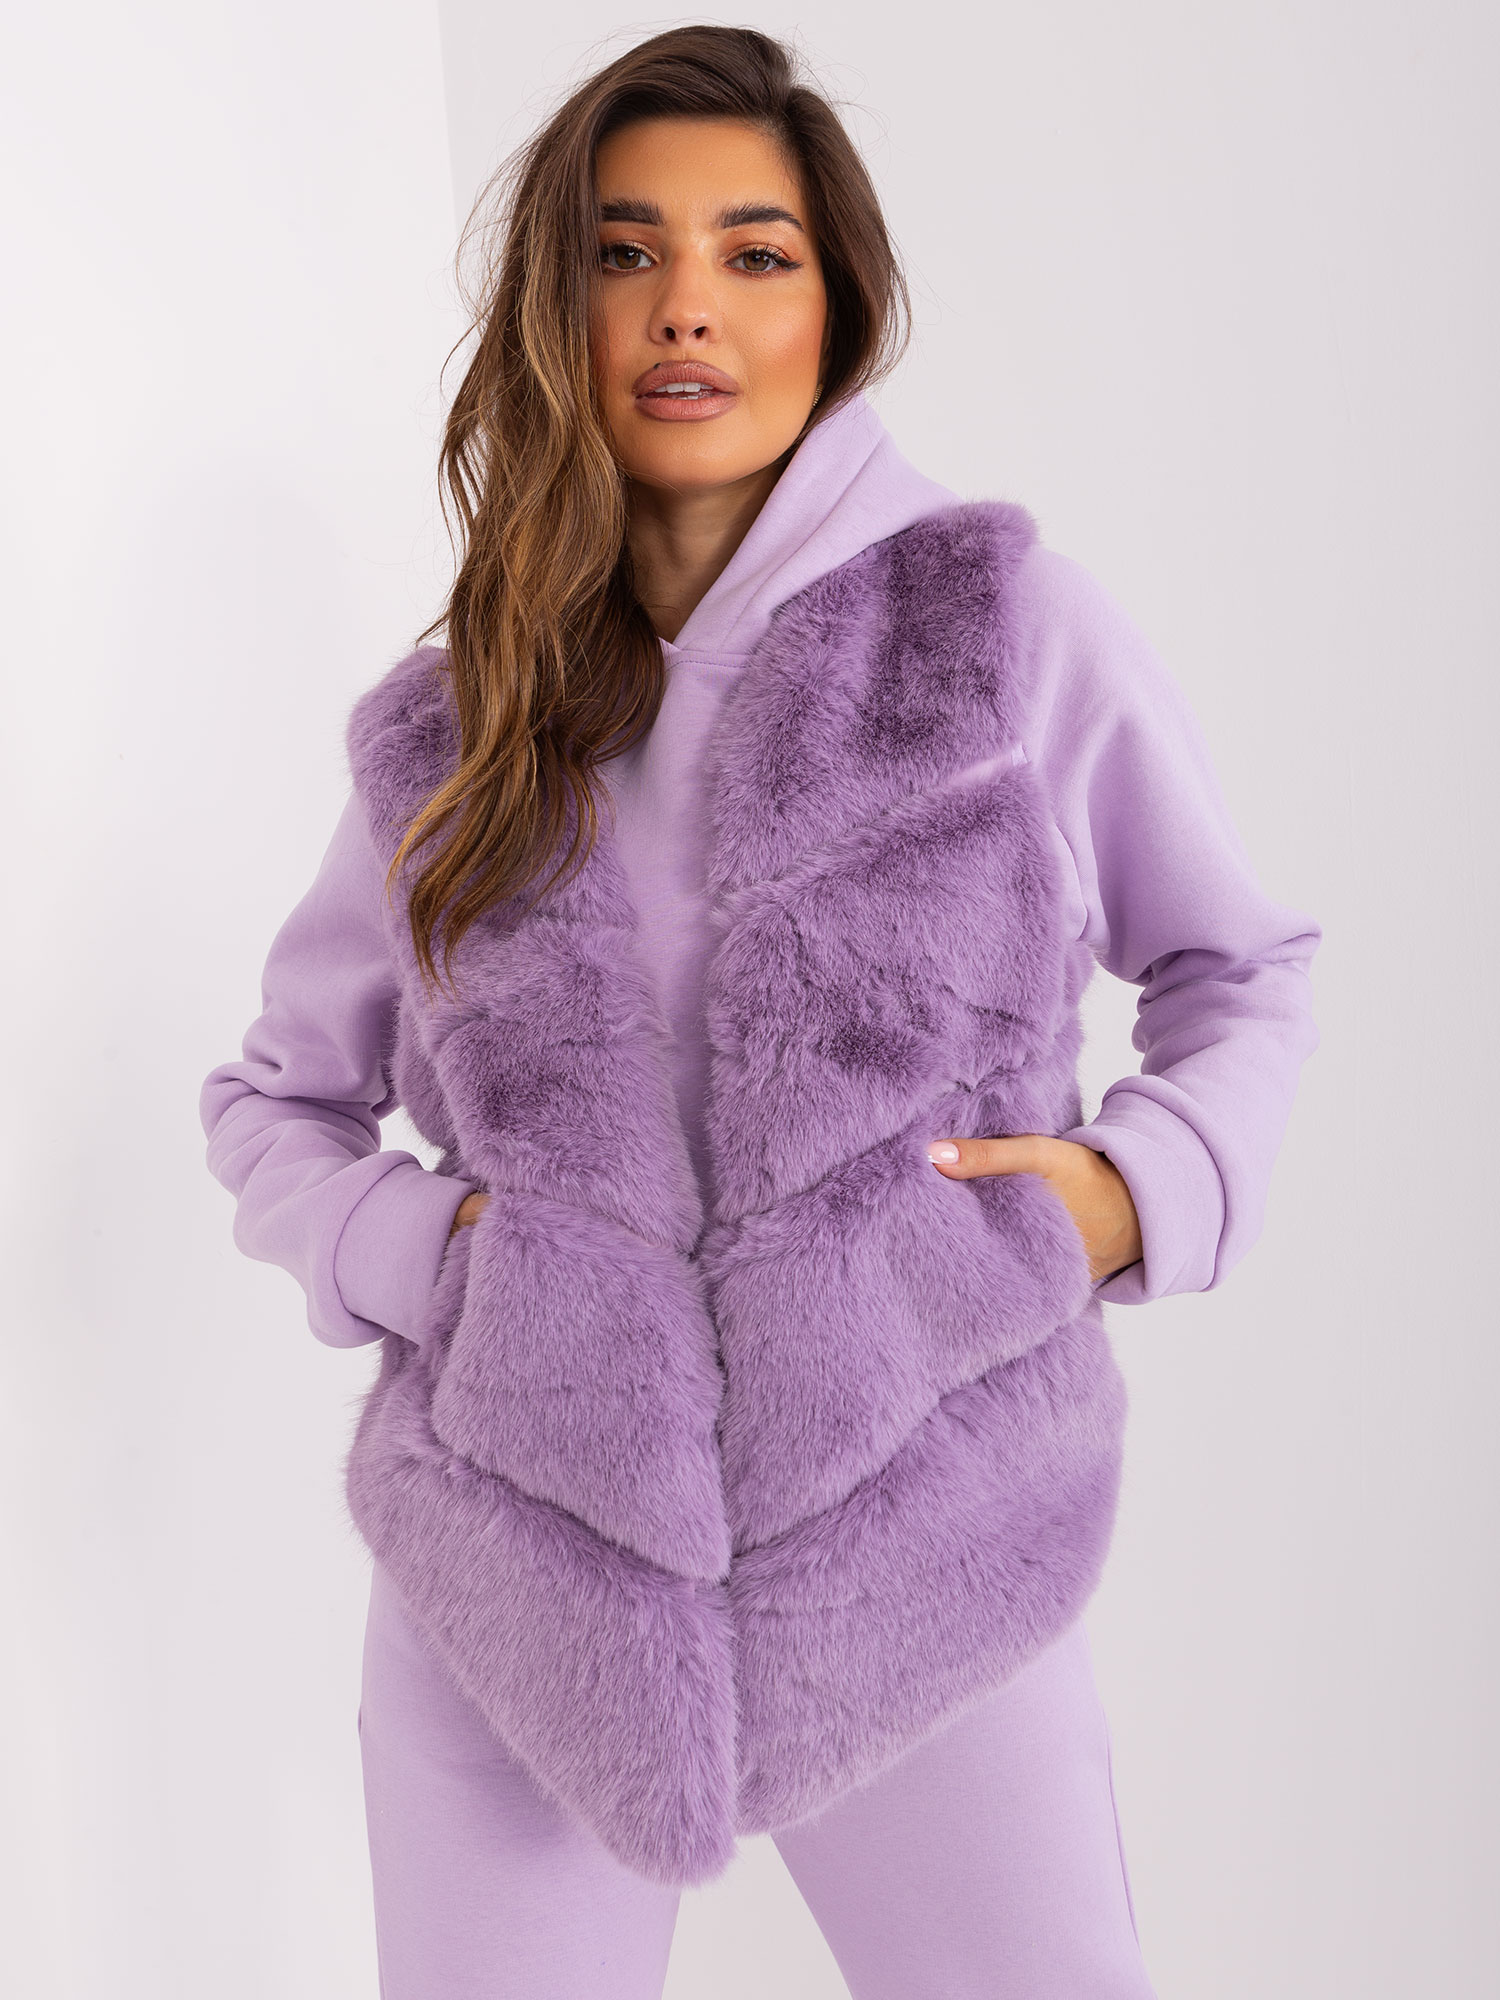 Light purple women's faux fur vest